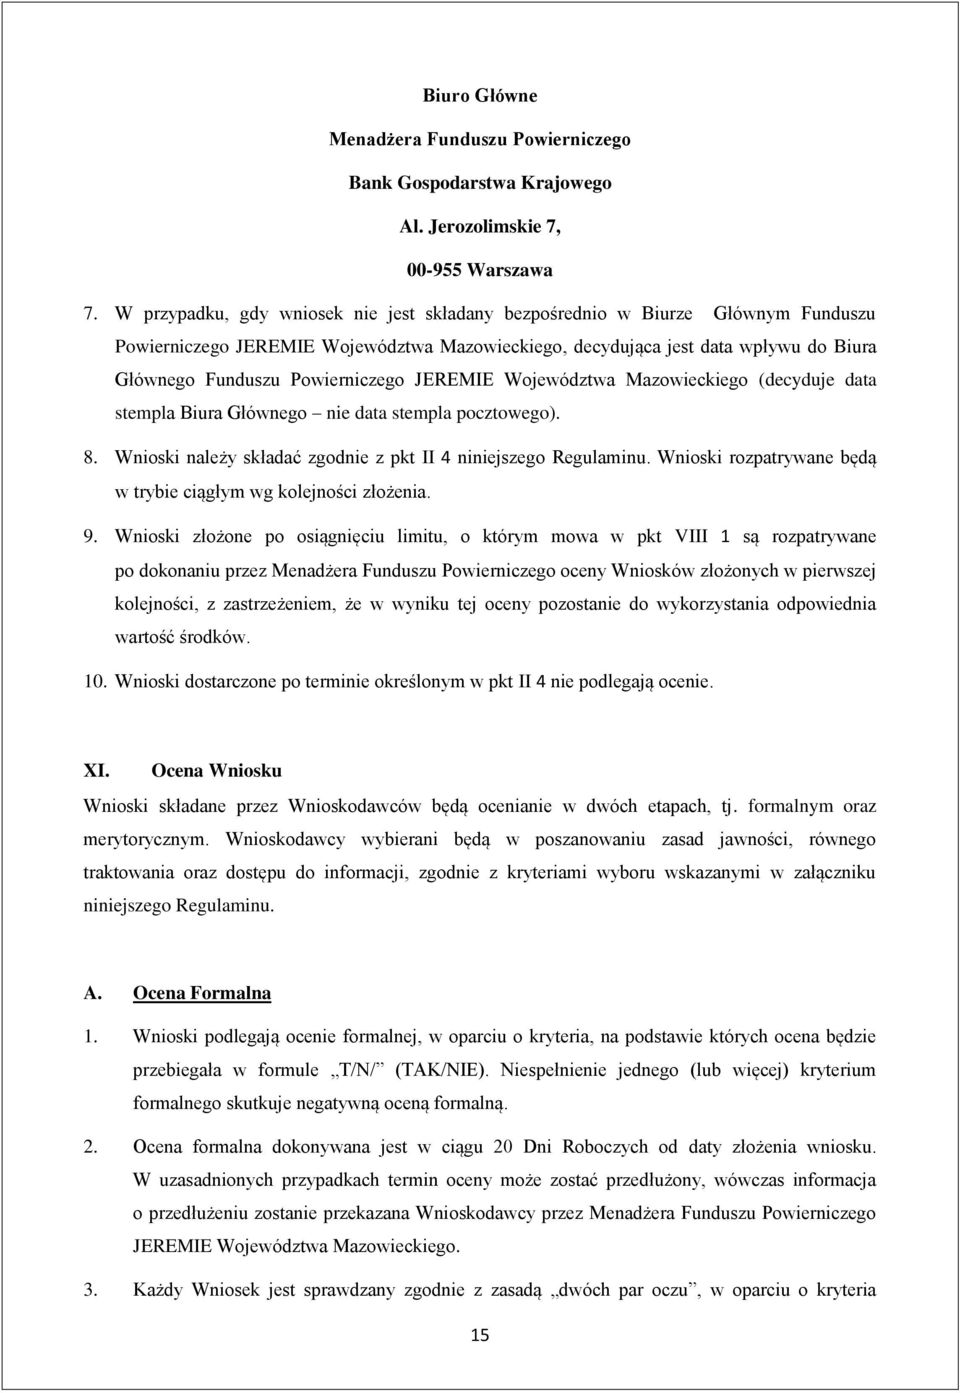 JEREMIE Województwa Mazowieckiego (decyduje data stempla Biura Głównego nie data stempla pocztowego). 8. Wnioski należy składać zgodnie z pkt II 4 niniejszego Regulaminu.